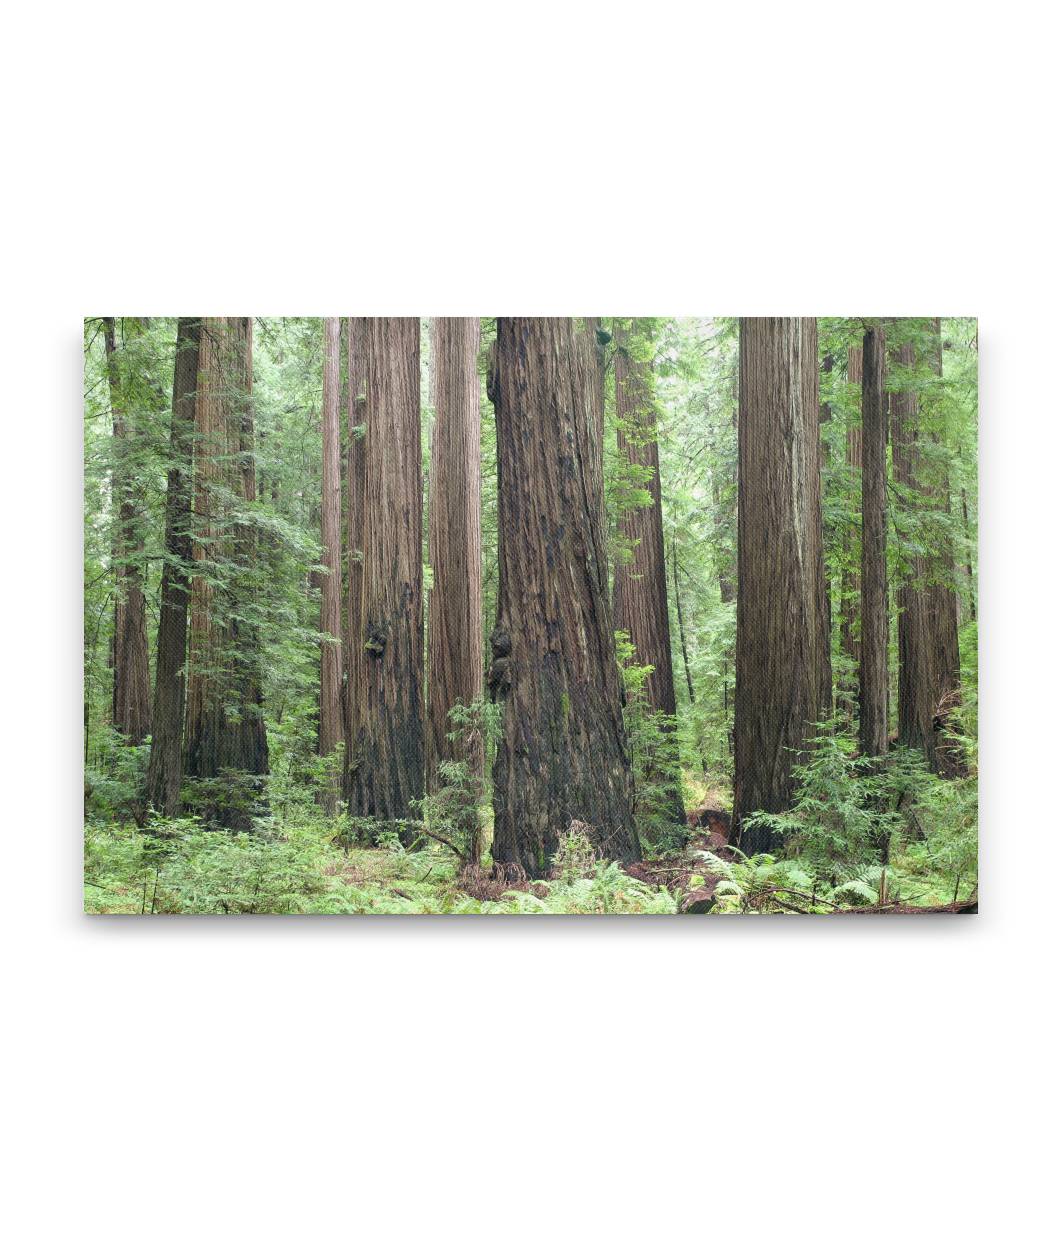 Coastal redwood forest, Humboldt Redwoods State Park, California